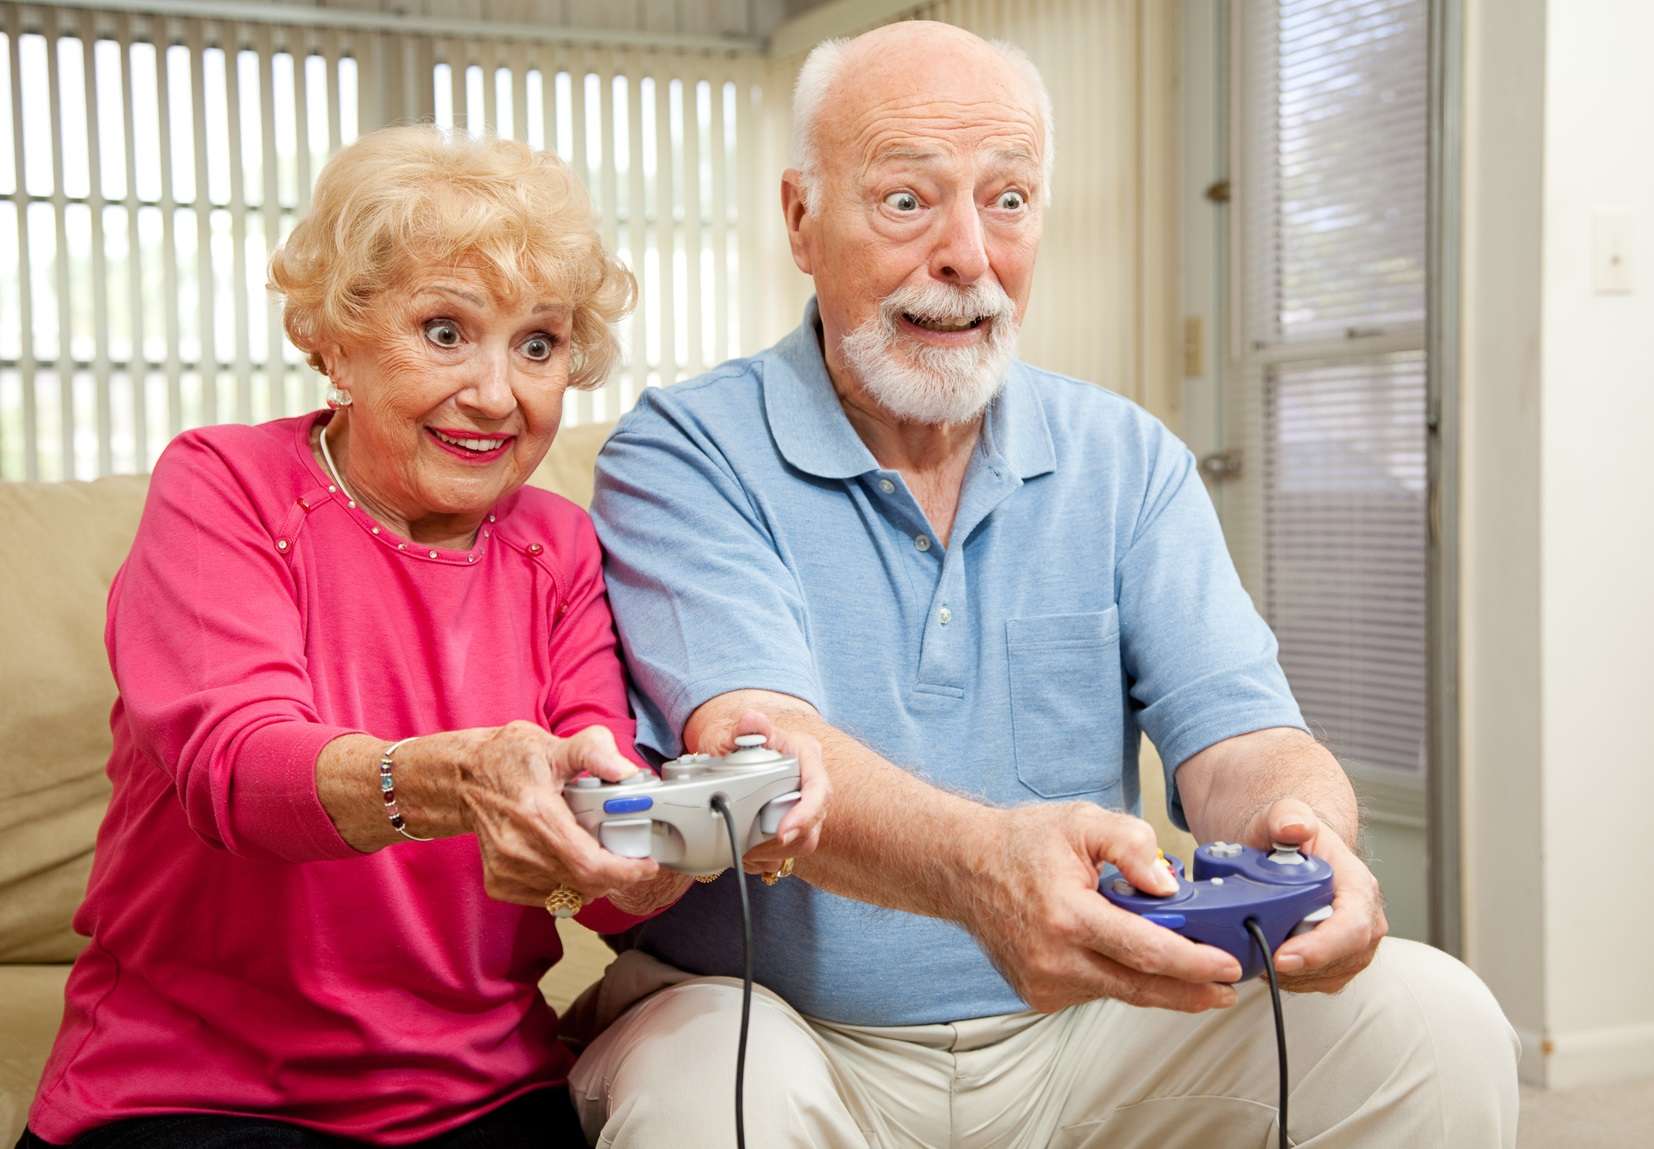 Les bénéfices des jeux vidéo pour les seniors - Observatoire des seniors